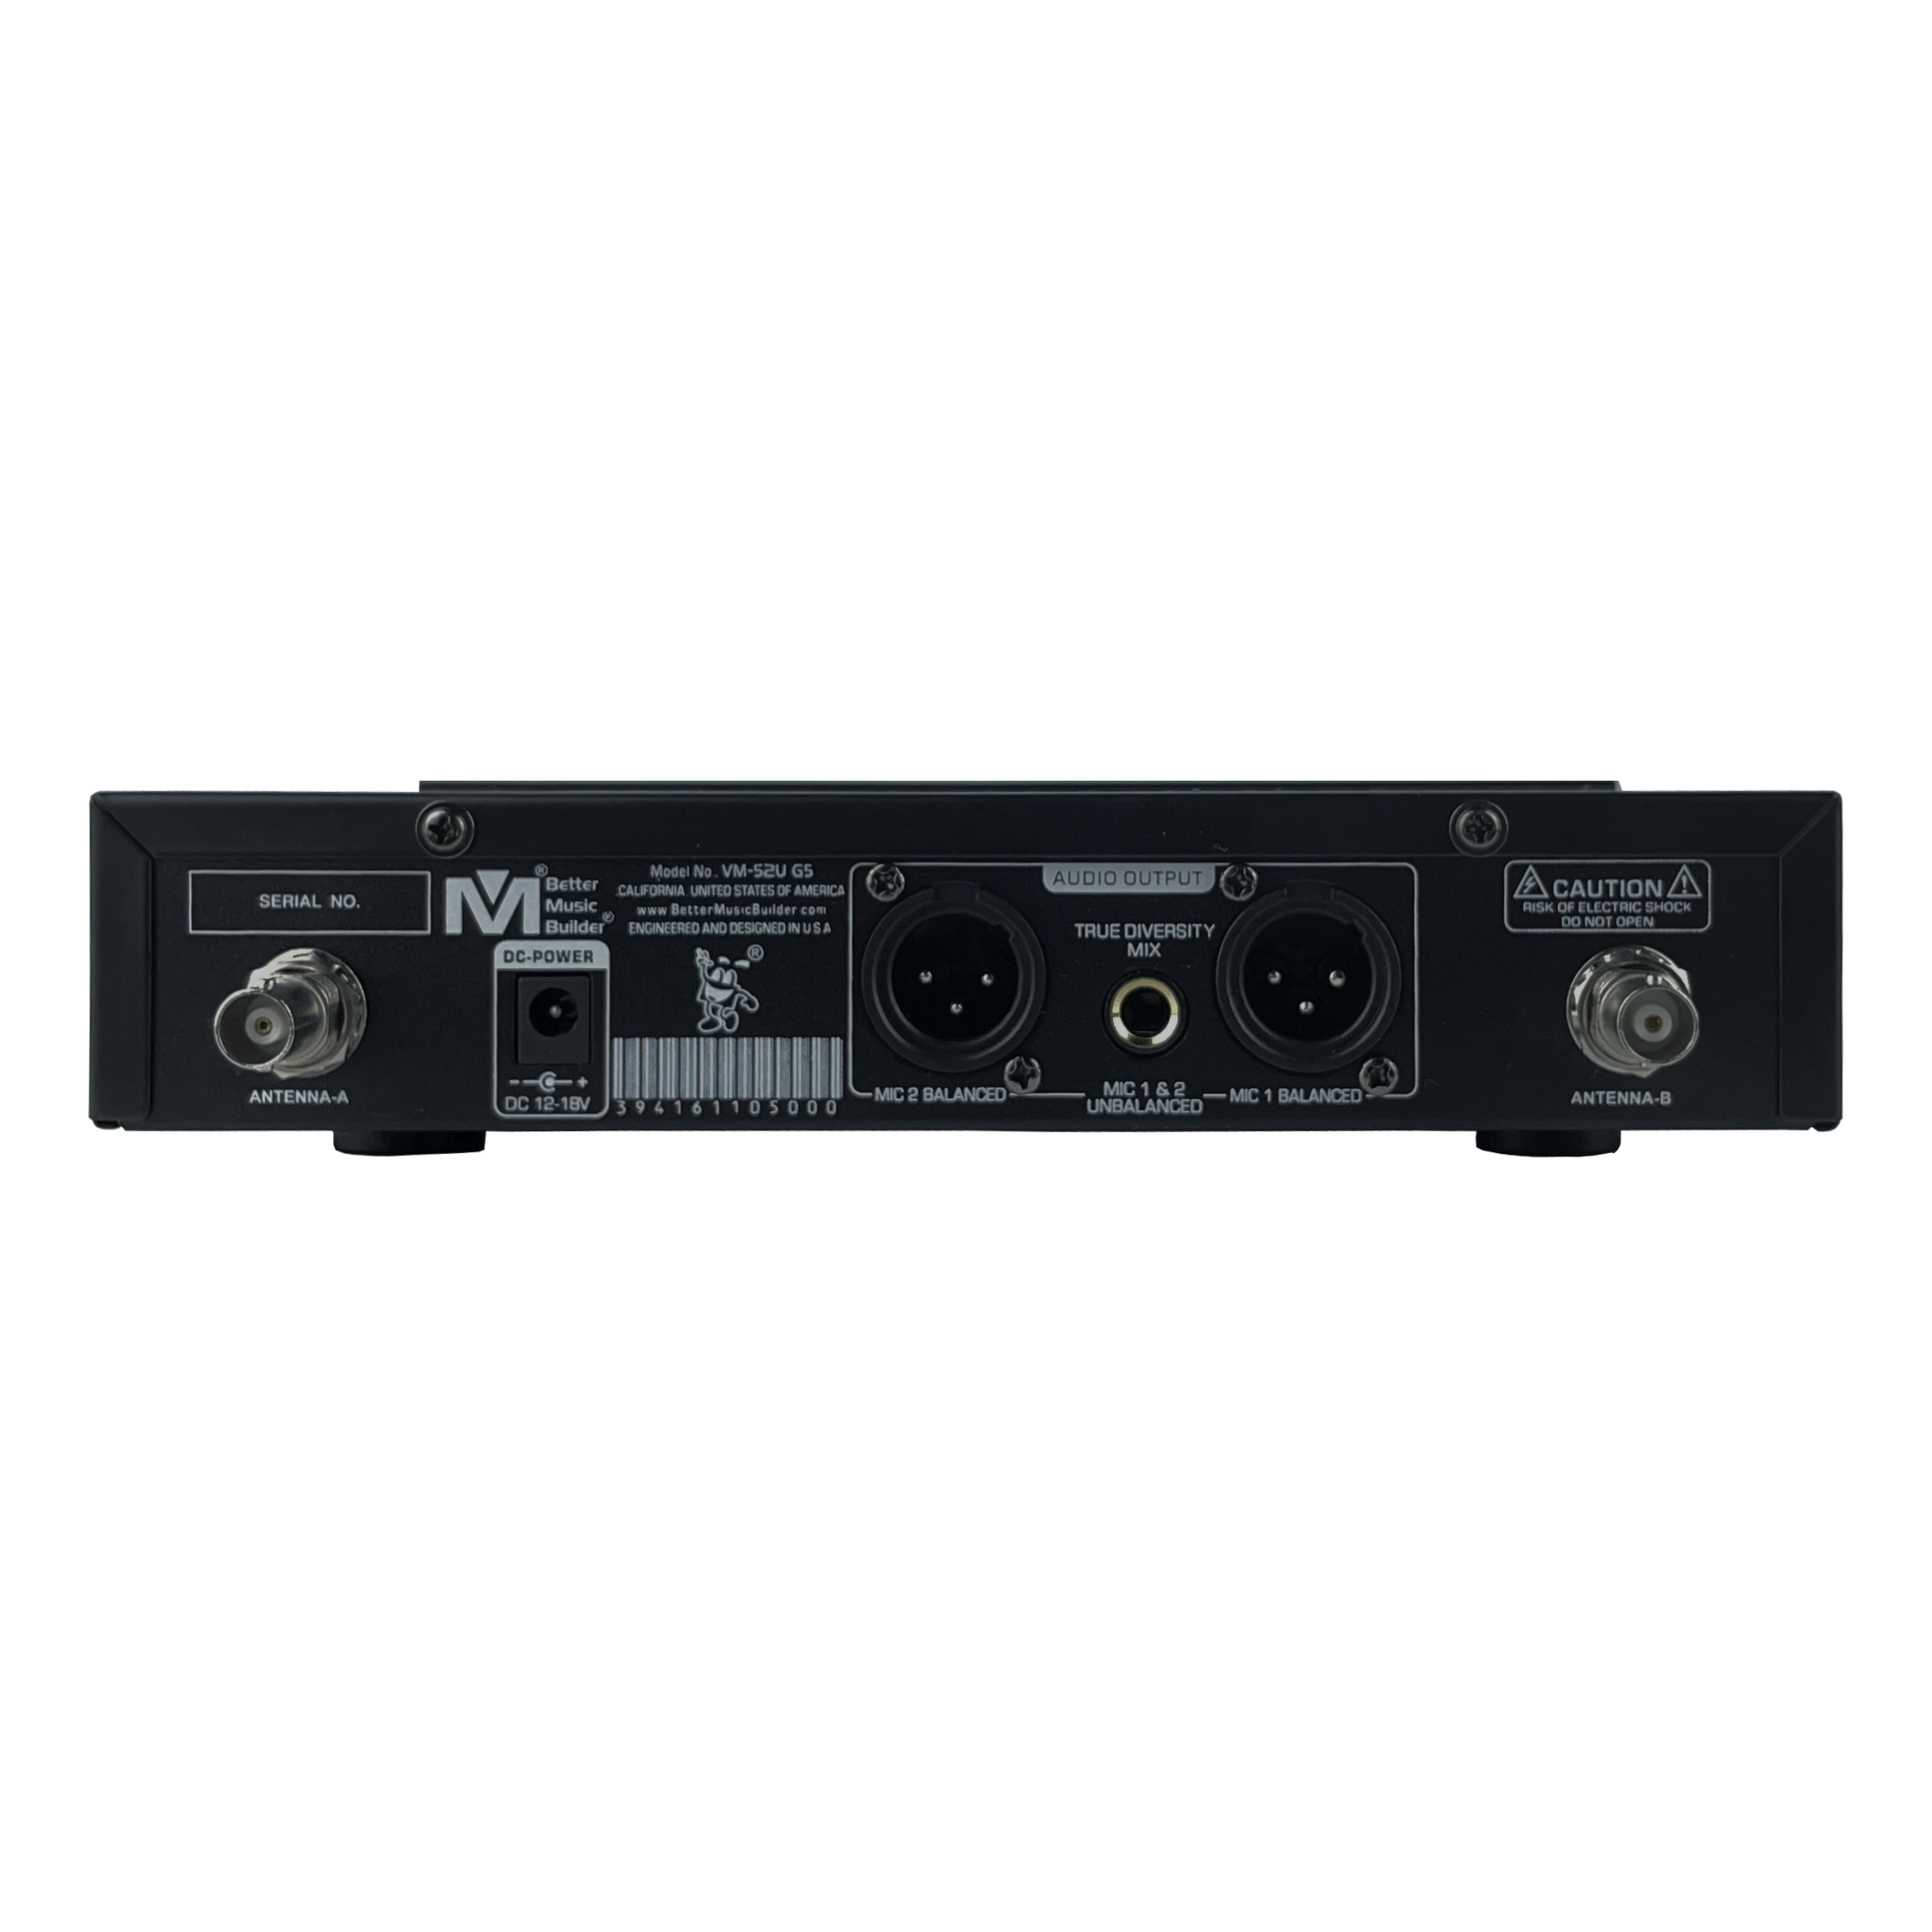 Âm Nhạc Hay Hơn Người Xây Dựng DX-388 G5 1400W Karaoke Trộn Bộ Khuếch Đại Kèm VM-52 G5 Micro Không Dây